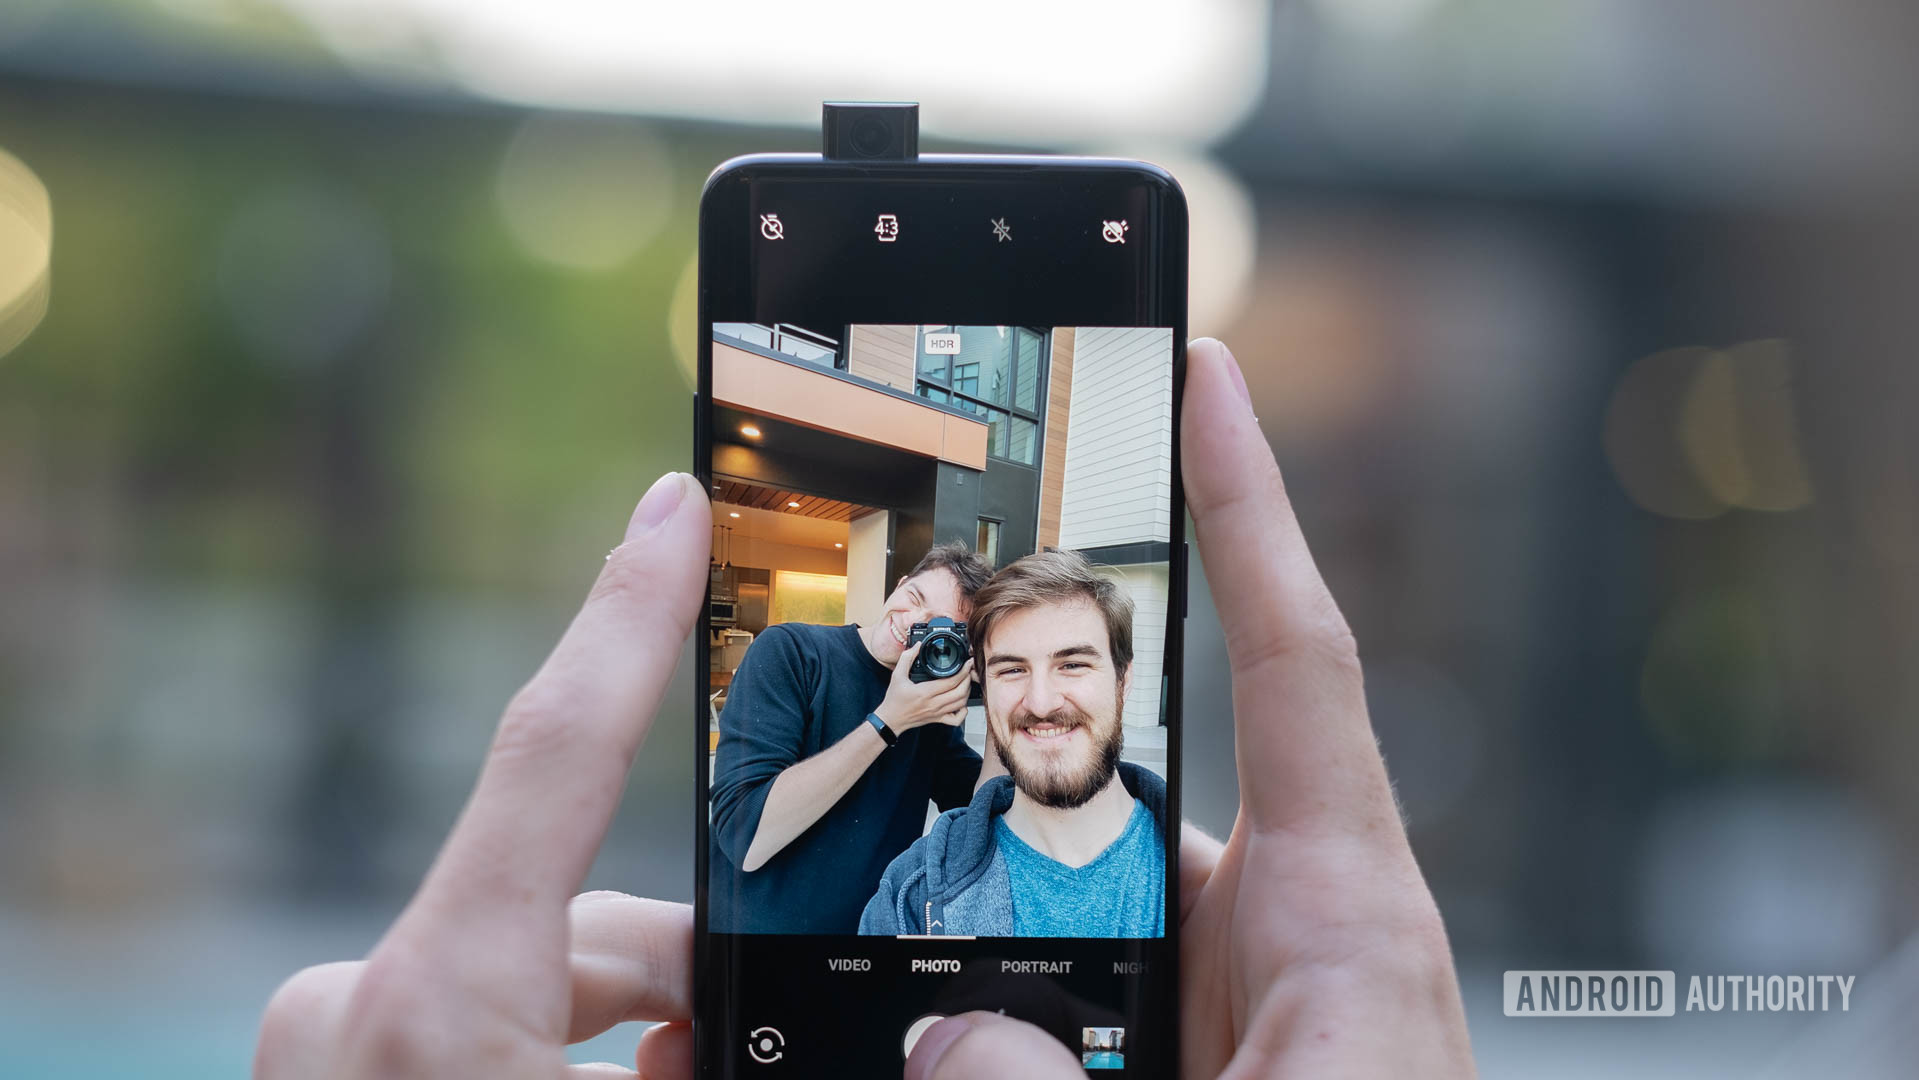 OnePlus 7 Pro taking a selfie